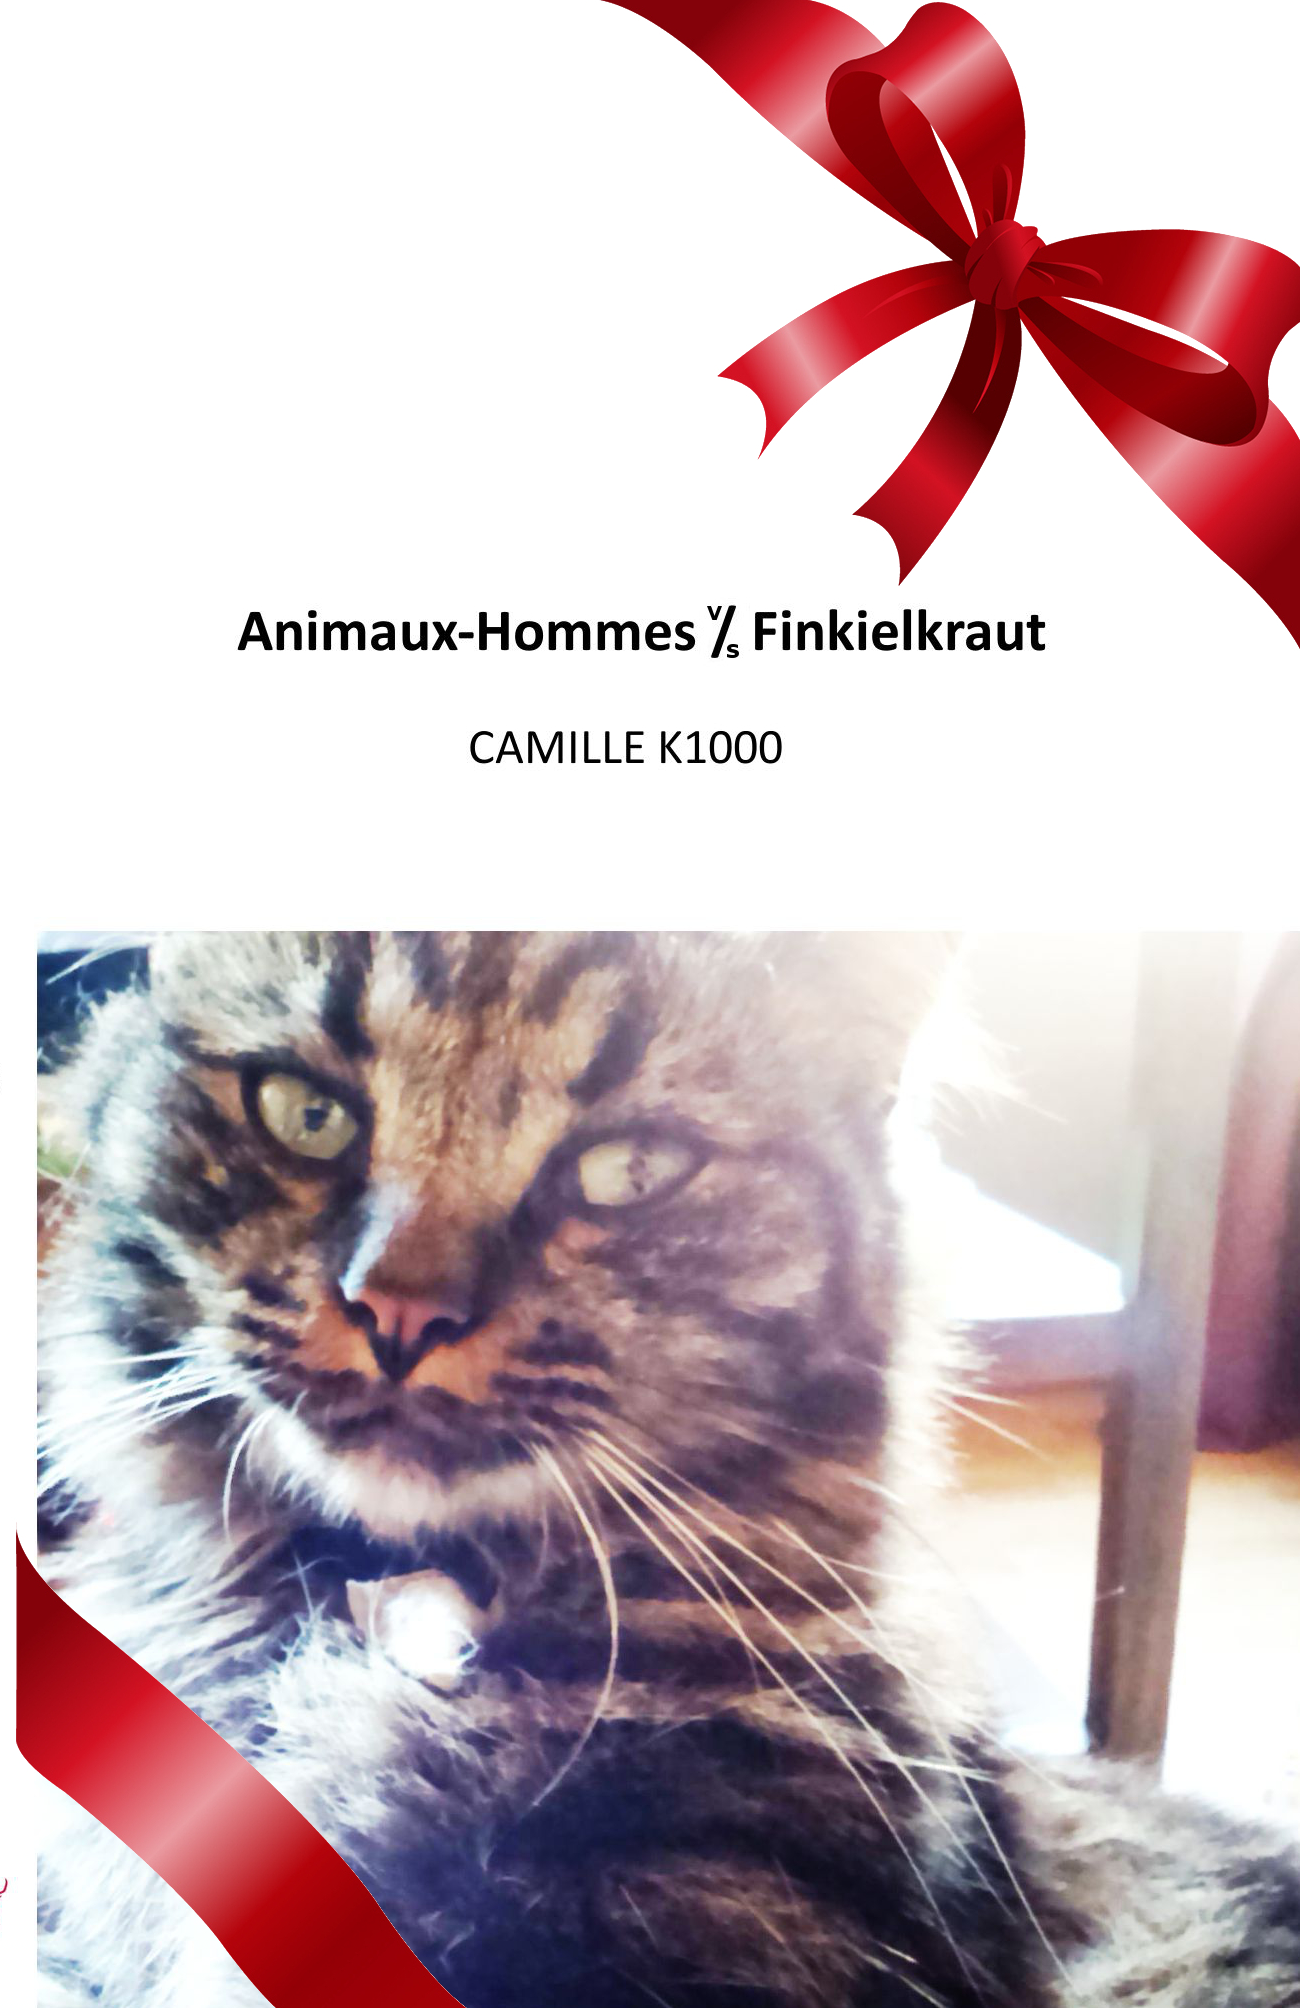 Animaux-Hommes VS Finkielkraut